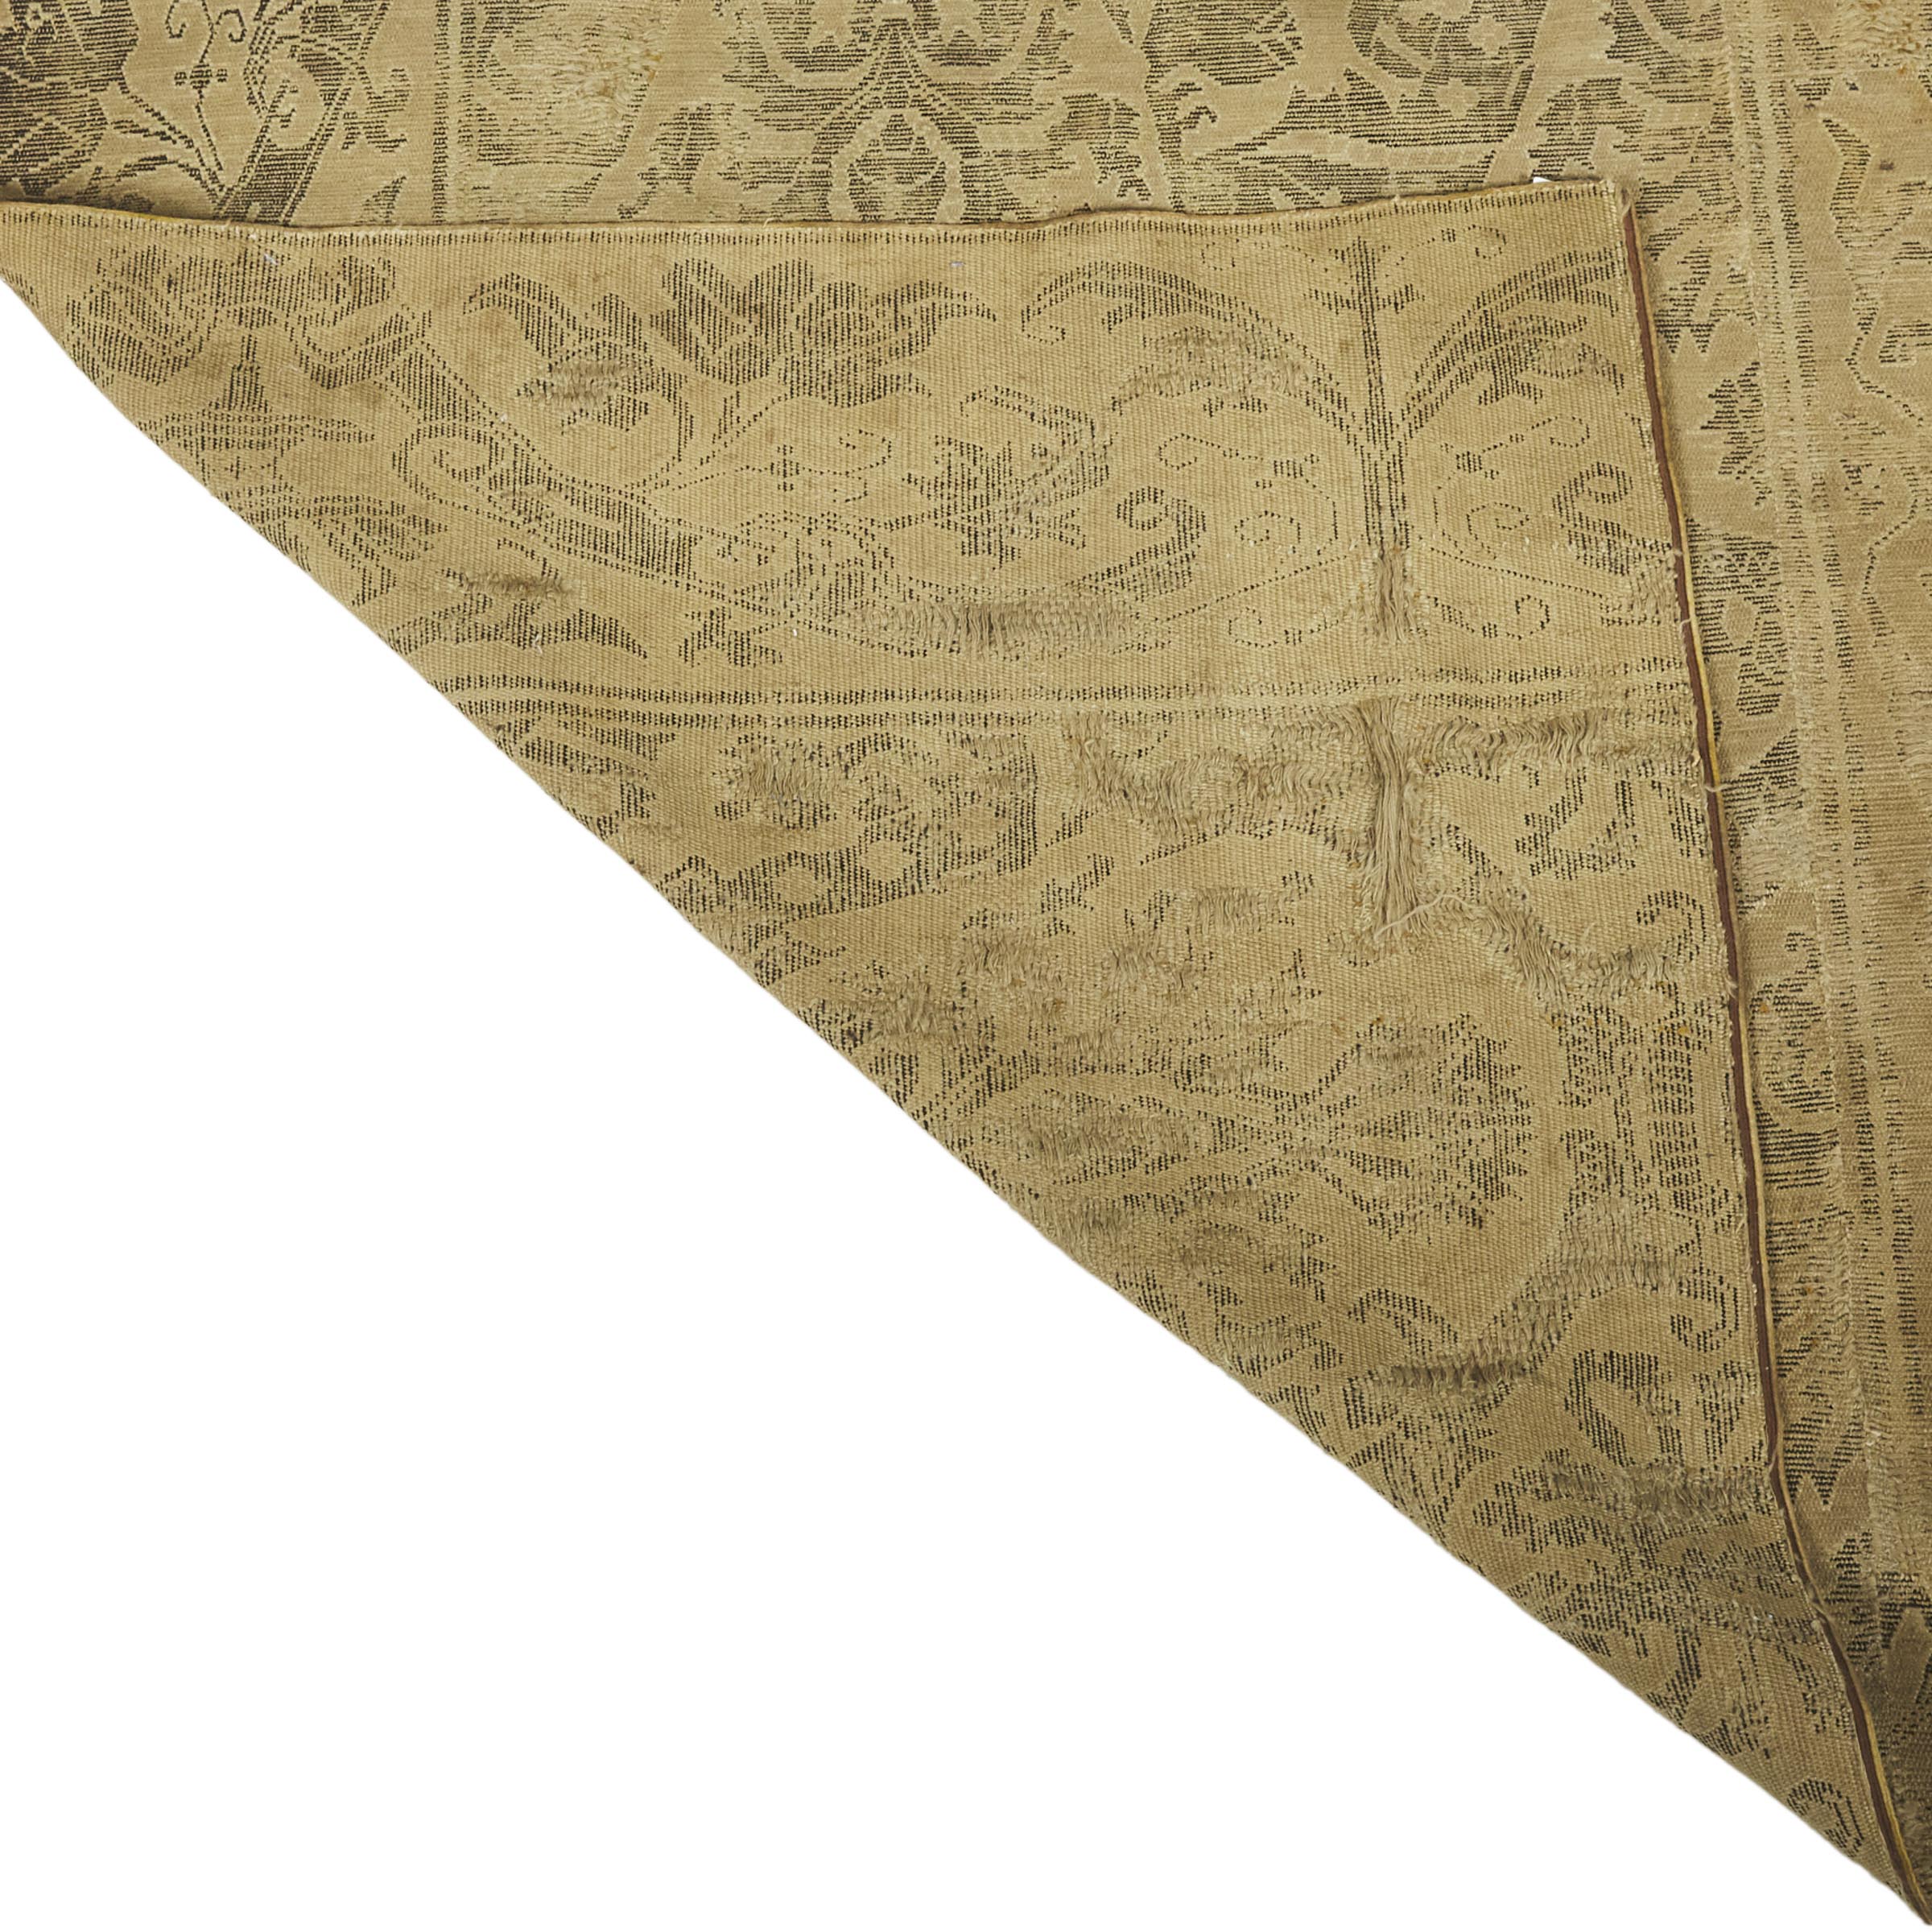 Spanish Cuenca Fragment, c.1600-1650